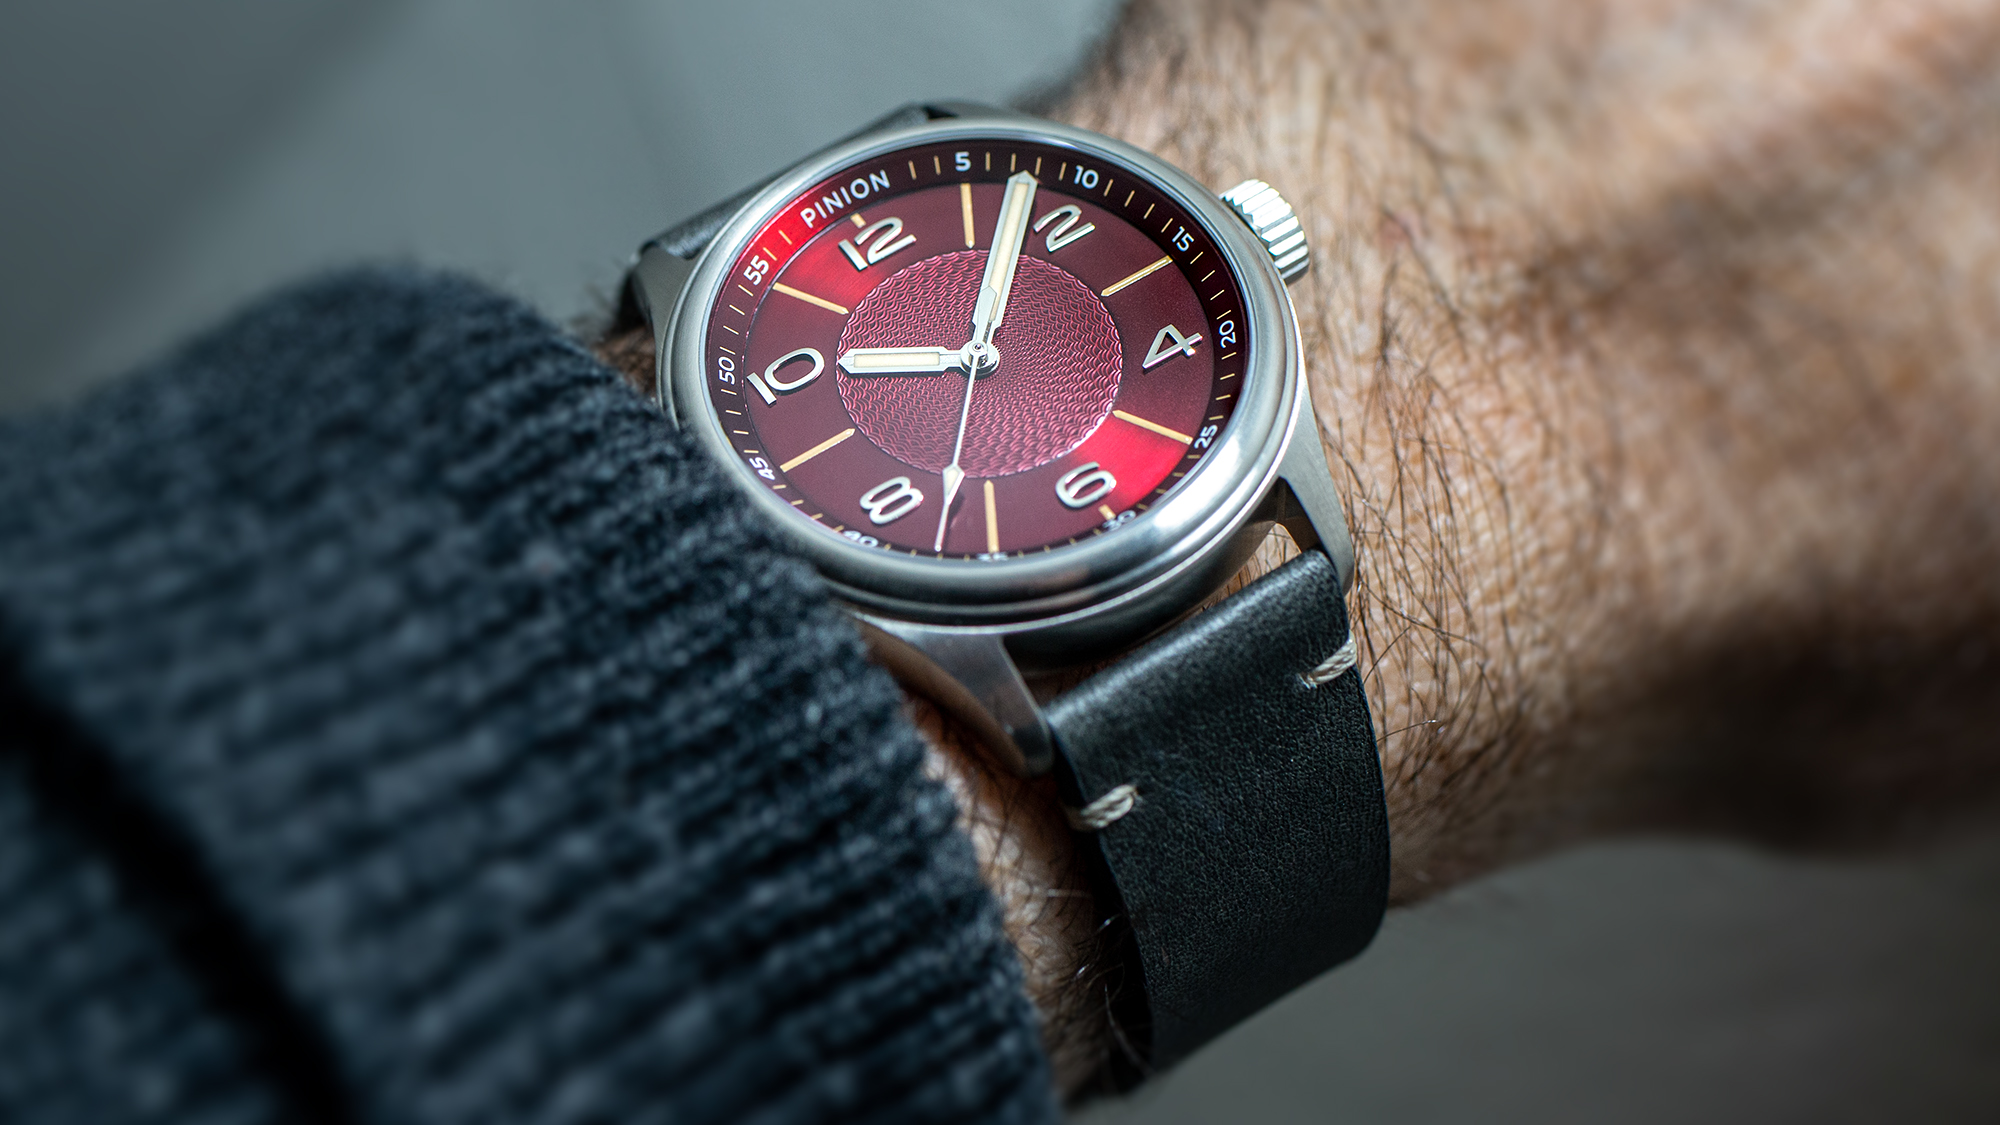 british-watches-pinion-neutron-imp-automatic-watch-wrist